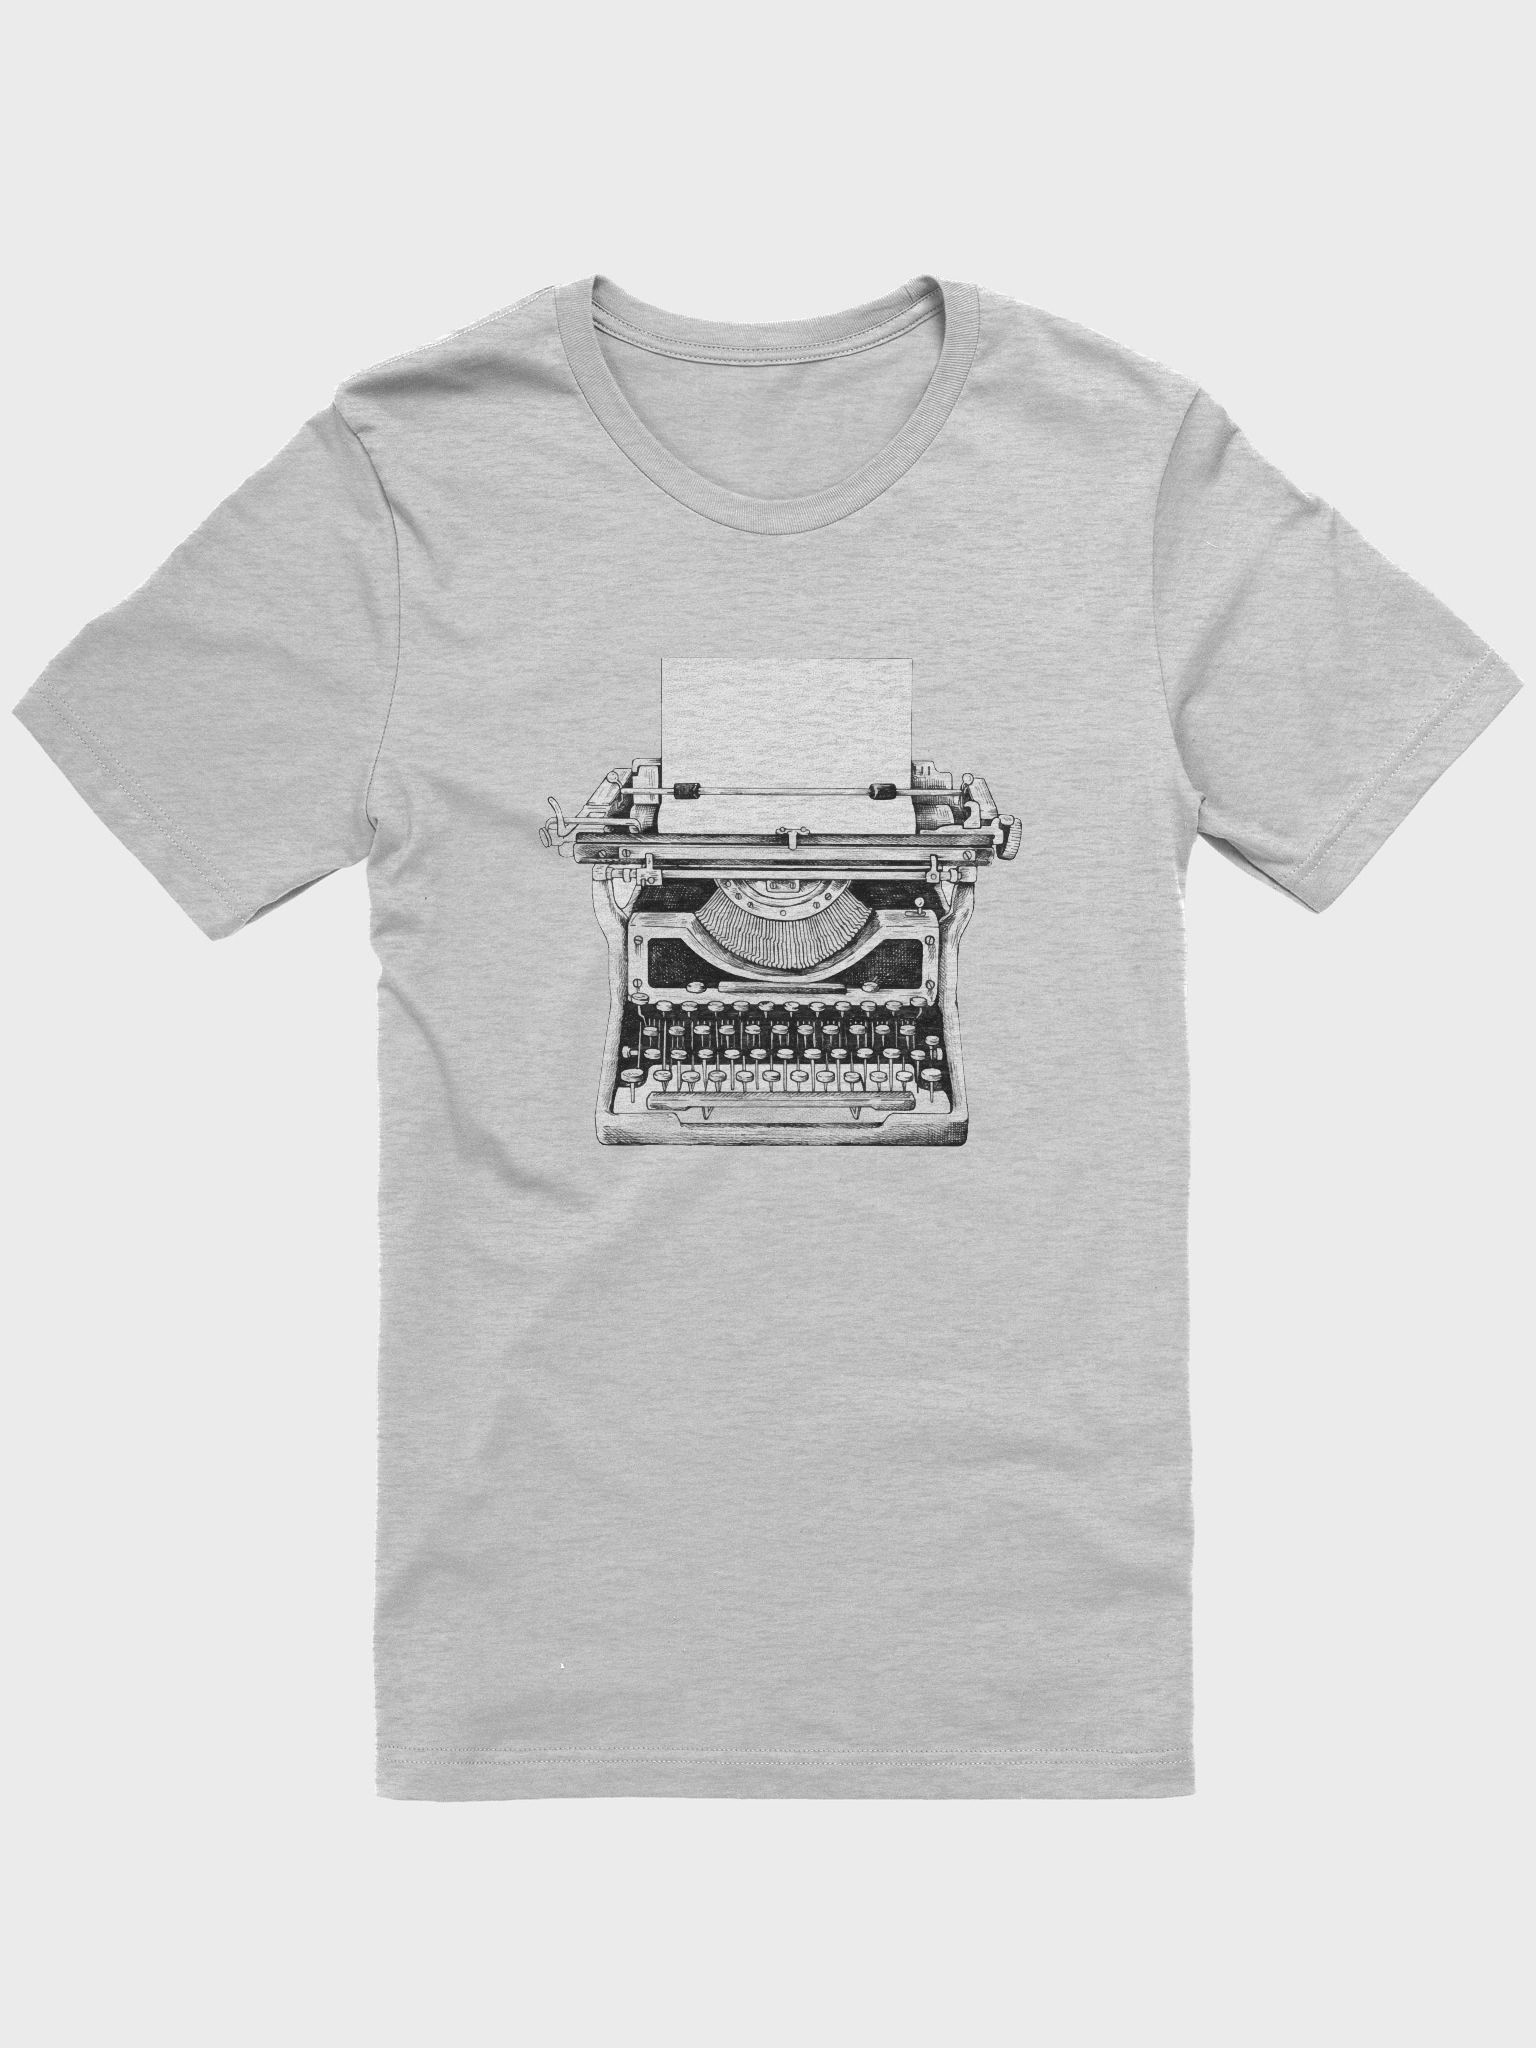 Vintage Typewriter T-Shirt